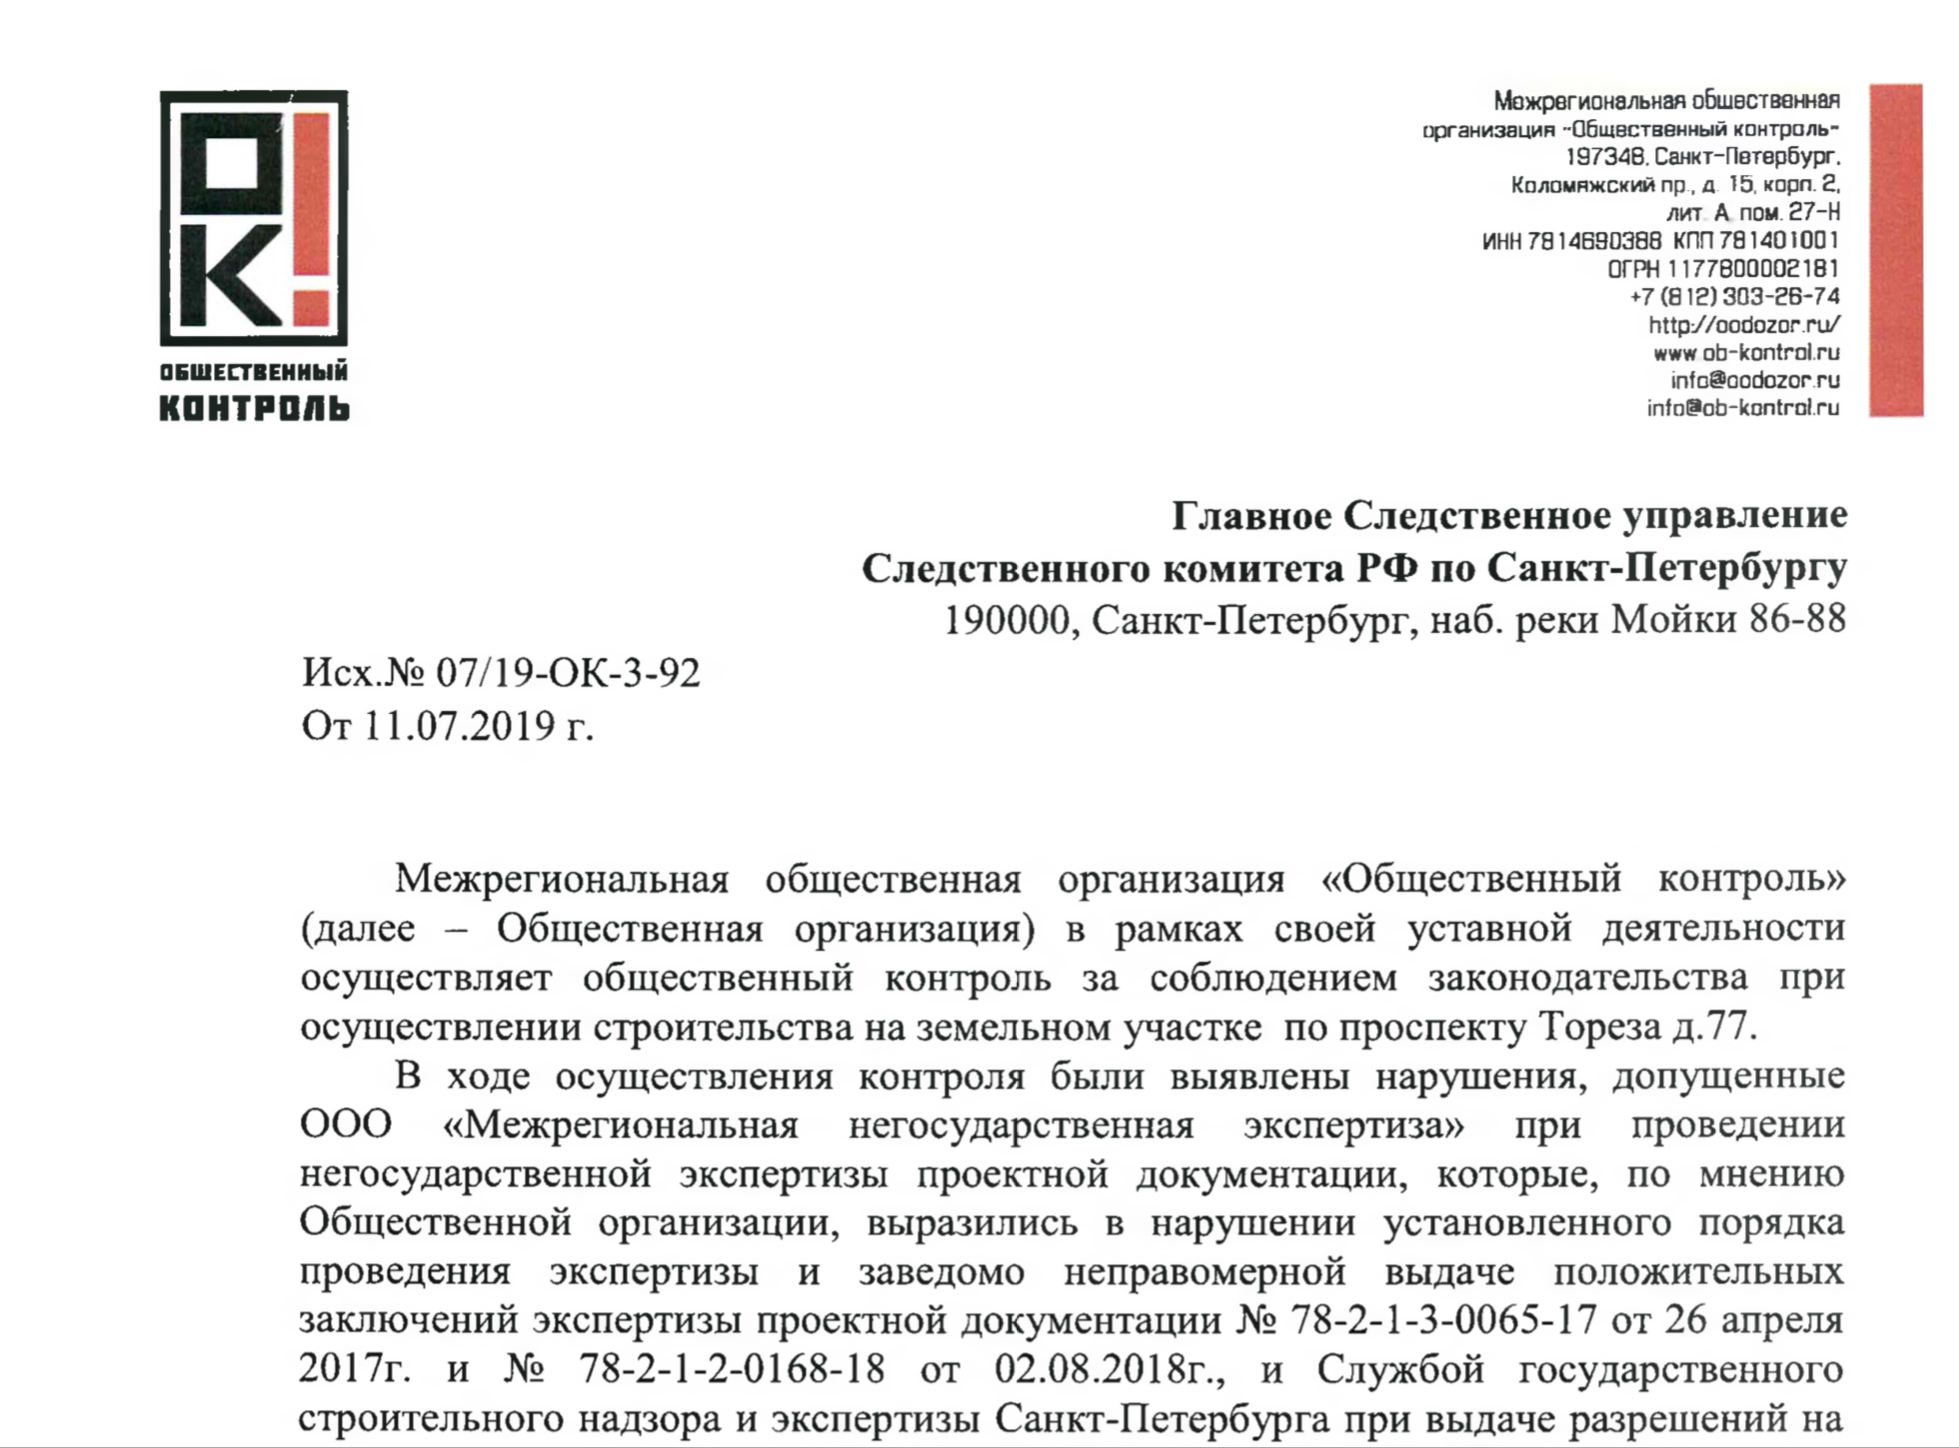 Обращение МОО «Общественный контроль» в Главное Следственное управление Следственного комитета РФ по Санкт-Петербургу